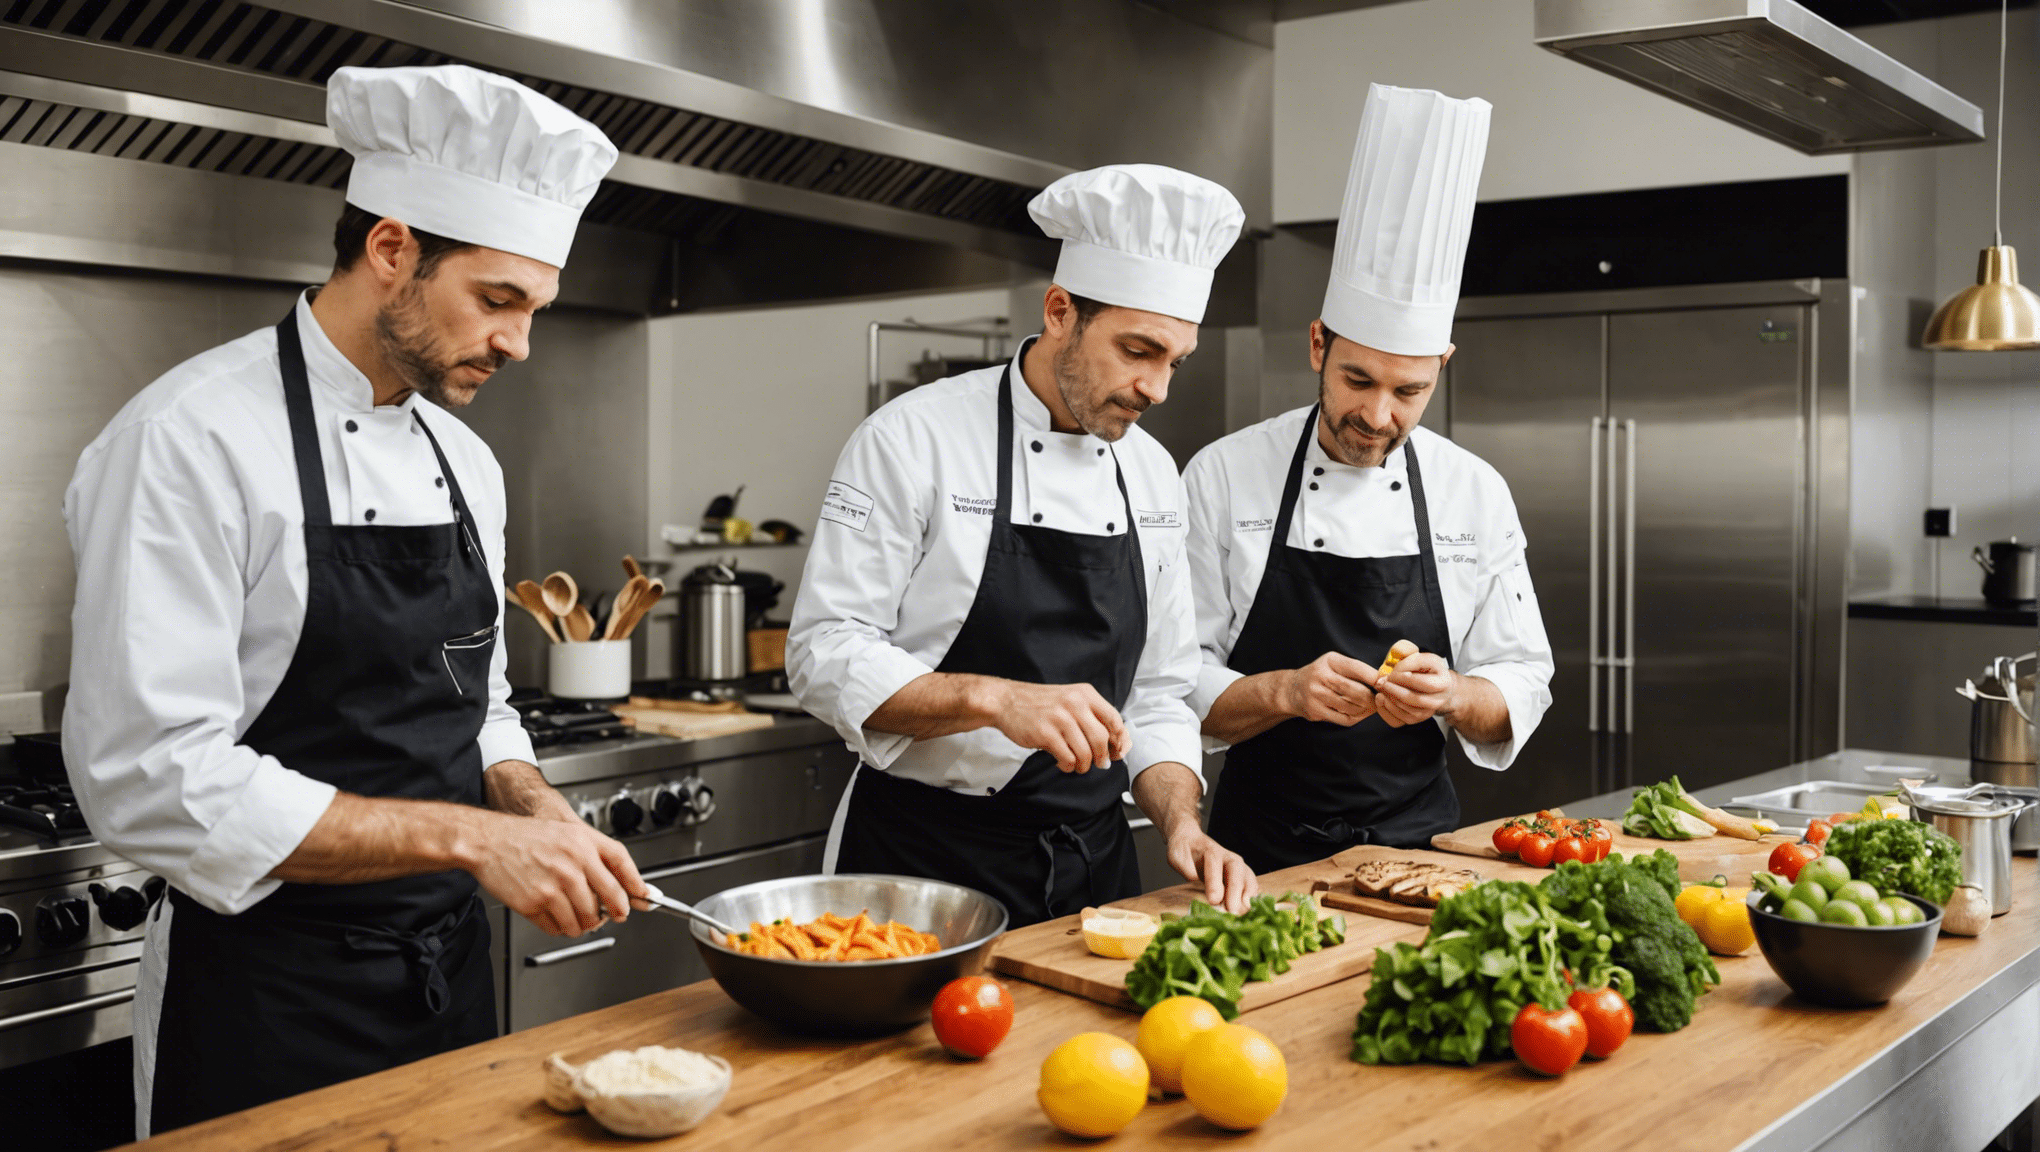 découvrez les dernières tendances en matière de cuisine et de gastronomie : innovations, recettes, et astuces pour être à la pointe de la tendance culinaire.